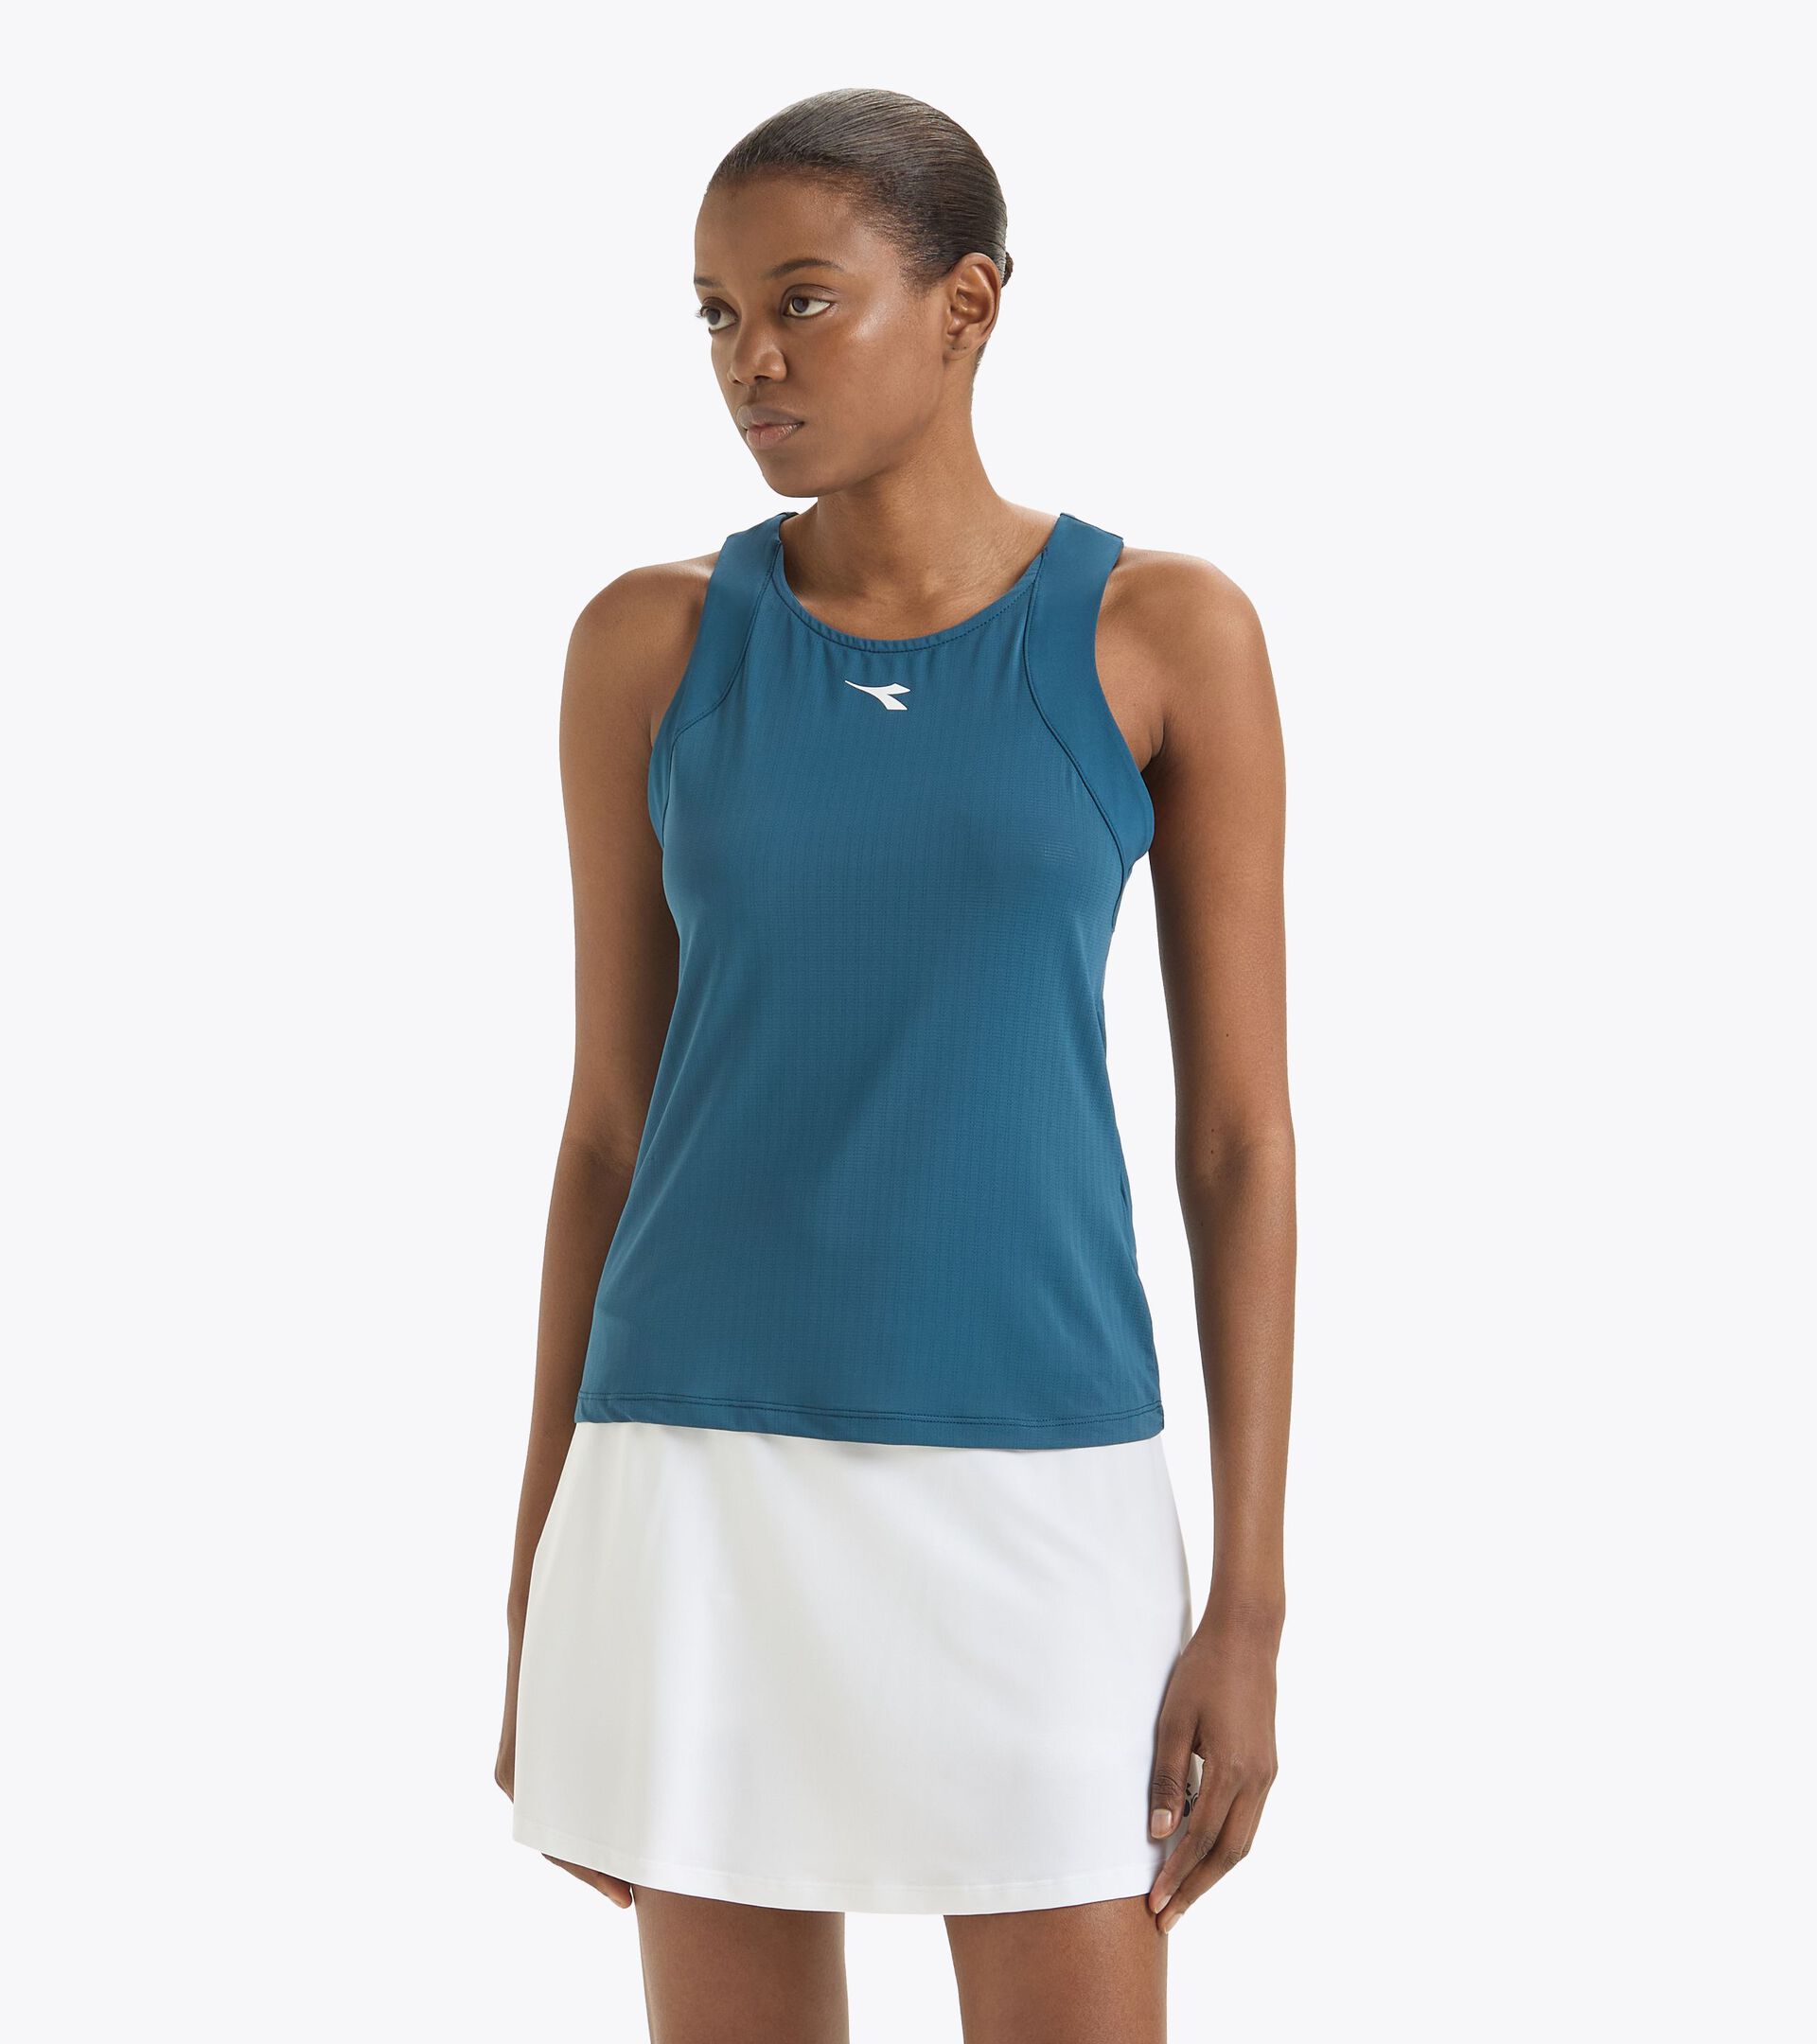 Camiseta sin mangas de tenis con espalda estilo nadadora - Competición - Mujer
 L. TANK ICON AZUL LEGION - Diadora